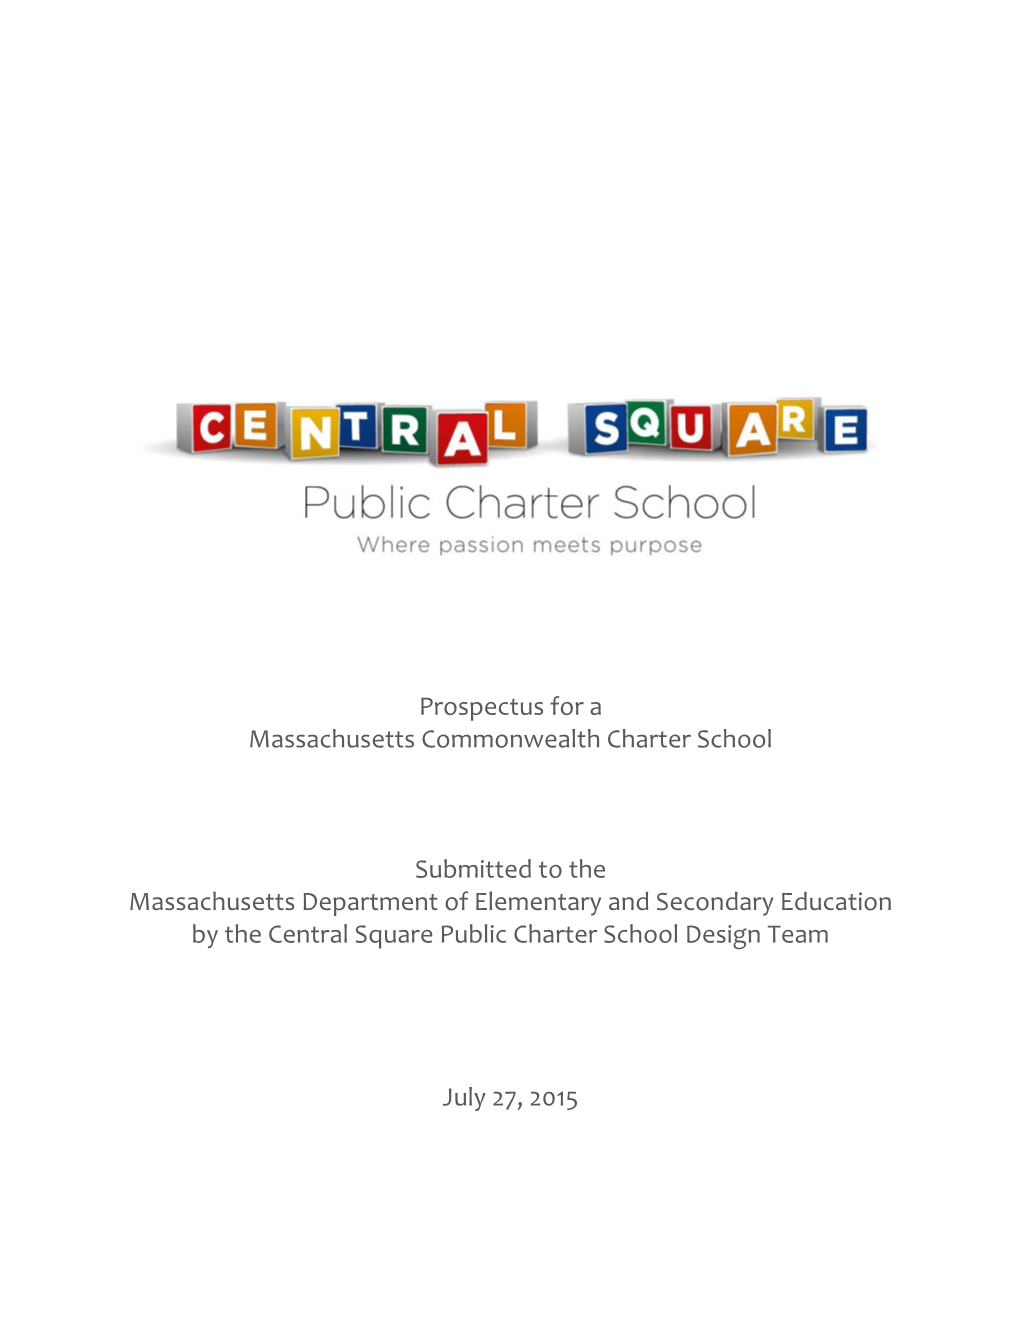 Central Square Public Charter School Design Team